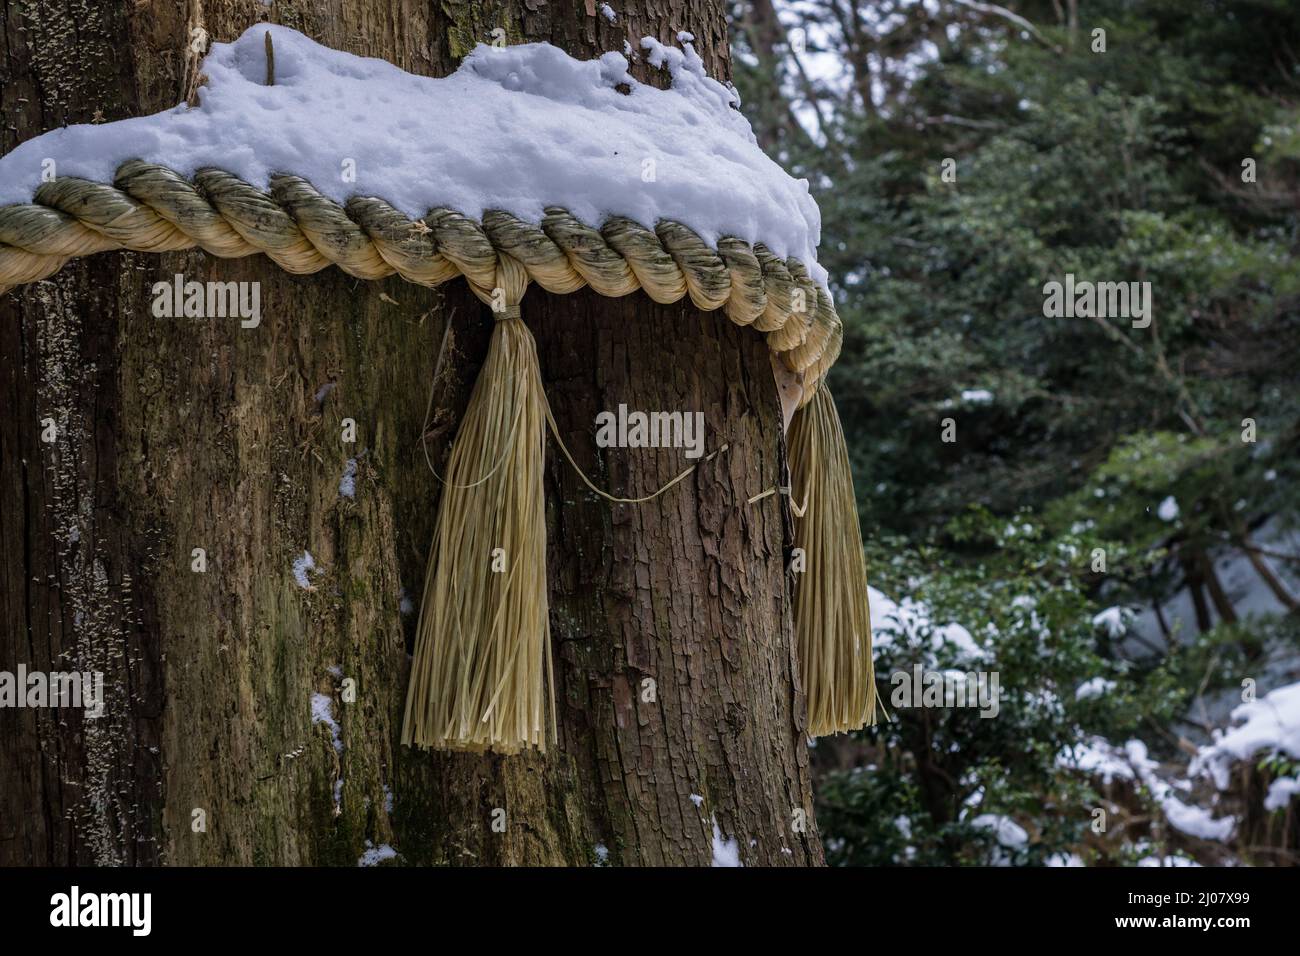 Tradicional japonés Shinto shimenawa cuerda sagrada cubierta de nieve, atada alrededor de un gran árbol en un bosque en Kyoto Japón. Foto de stock